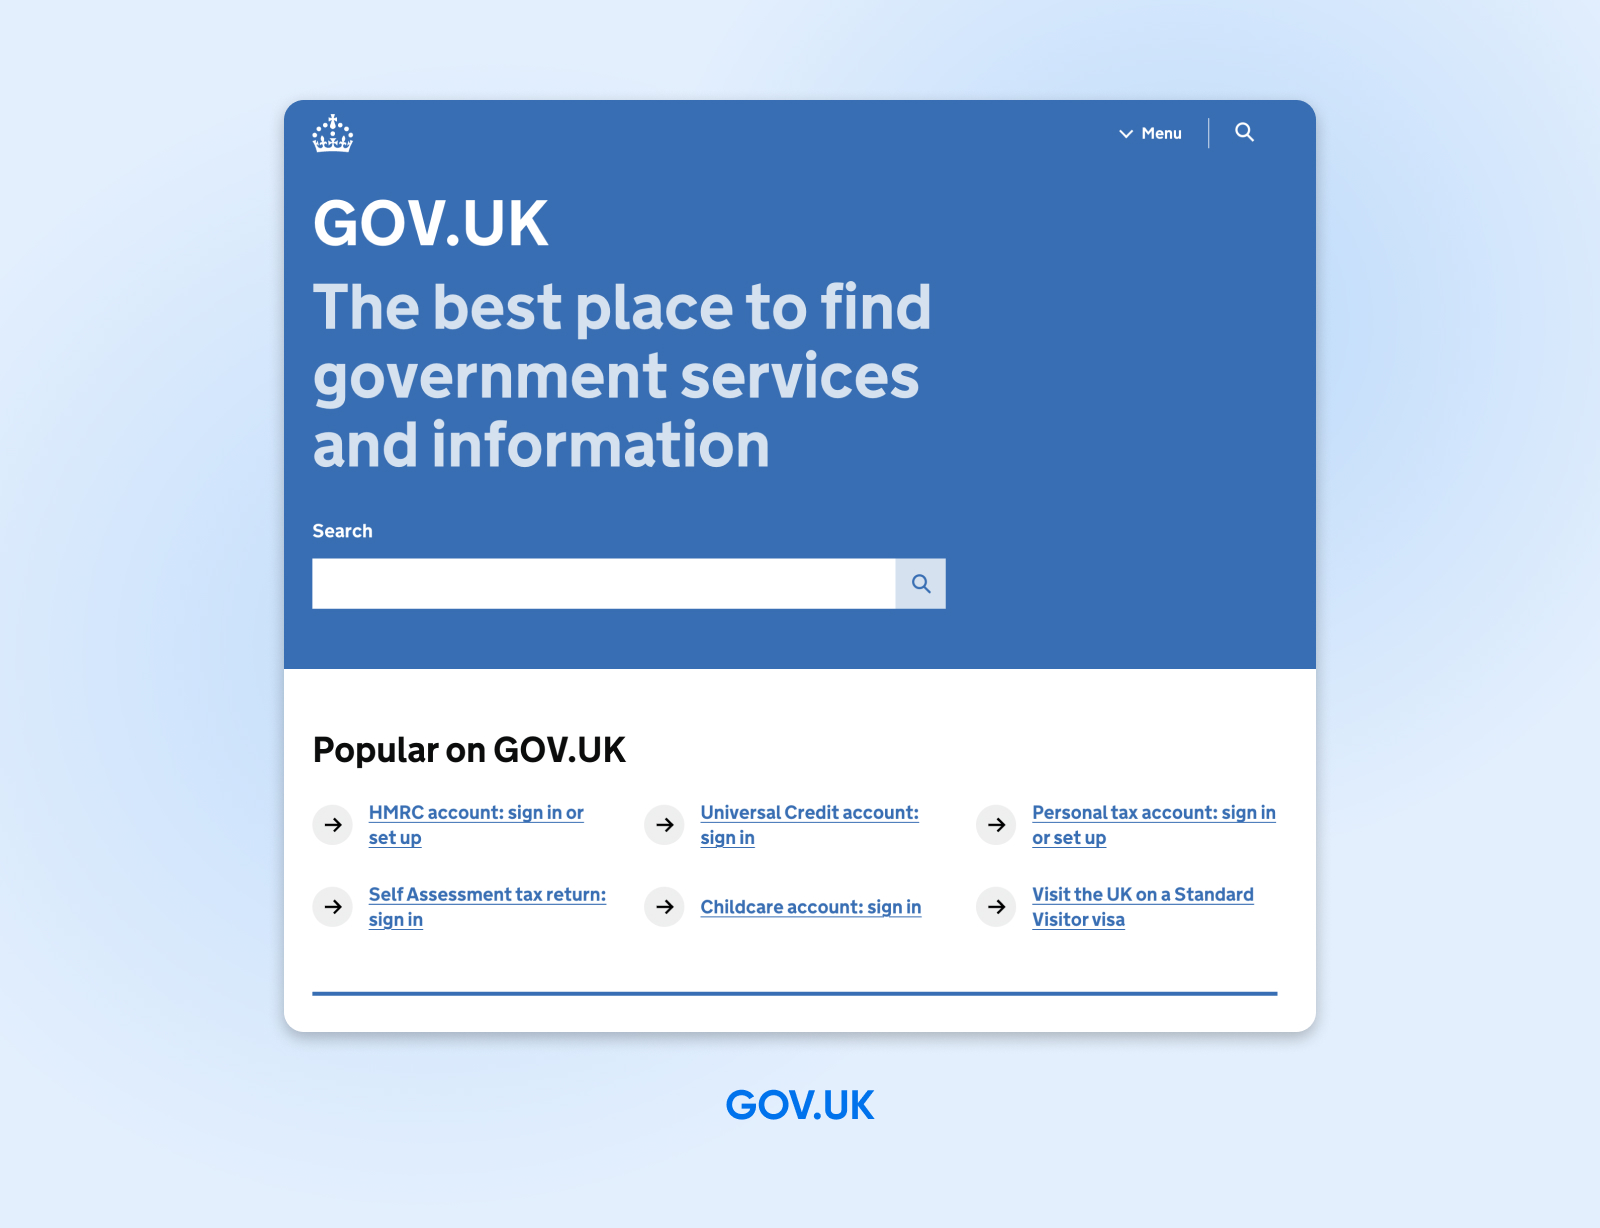 Sitio web de GOV.UK en una combinación de colores azul y blanco con una barra de búsqueda y enlaces debajo de "Popular en GOV.UK" para una mejor navegación.